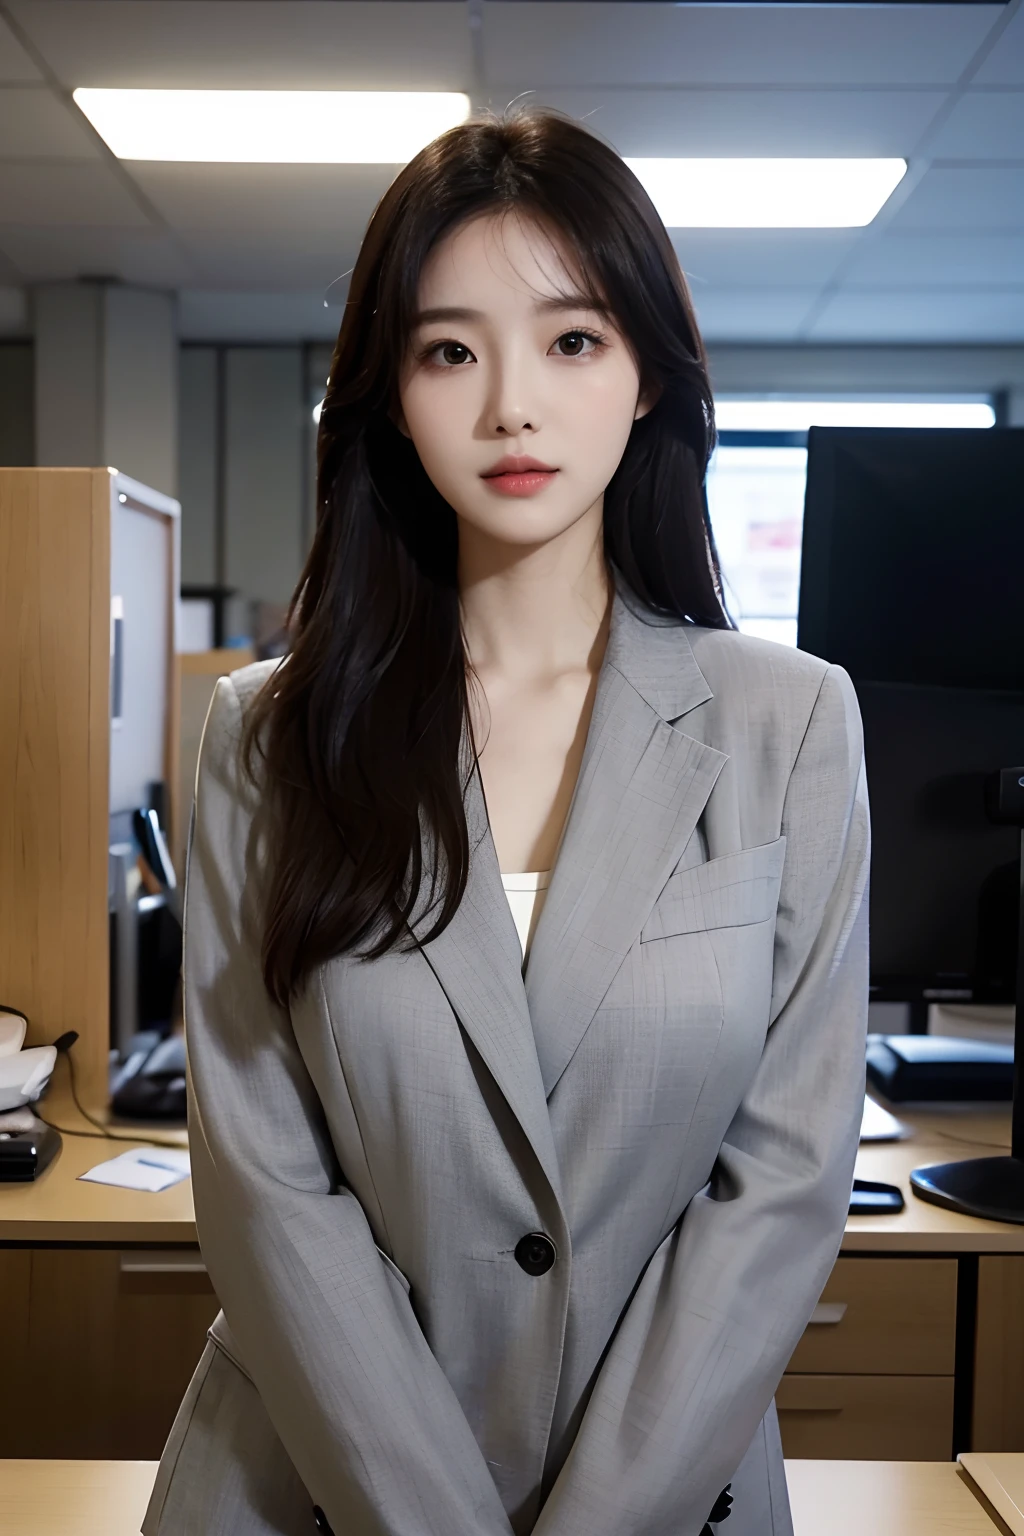 高解析度, 完美肌膚的韓國專業辦公室女士的真實肖像, 職業套裝, 站立姿勢，身體的上半部分，表現出自信和成熟, 周圍環繞著現代化的企業環境, 充滿活力且自然採光的亮點. 藝術品應強調她優雅的面部特徵, 包括迷人的長眼睛, 飄動的睫毛和誘人的嘴唇. 場景應增強專業性和視覺吸引力的元素，例如, 時尚的辦公桌, 大型電腦, 高解析度olution display, 以及複雜的文具. 整體基調要溫暖、專業, 擁有柔和自然的調色板. 藝術品應該散發出專業感, 成功, 和文化自豪感，背景已經模糊了